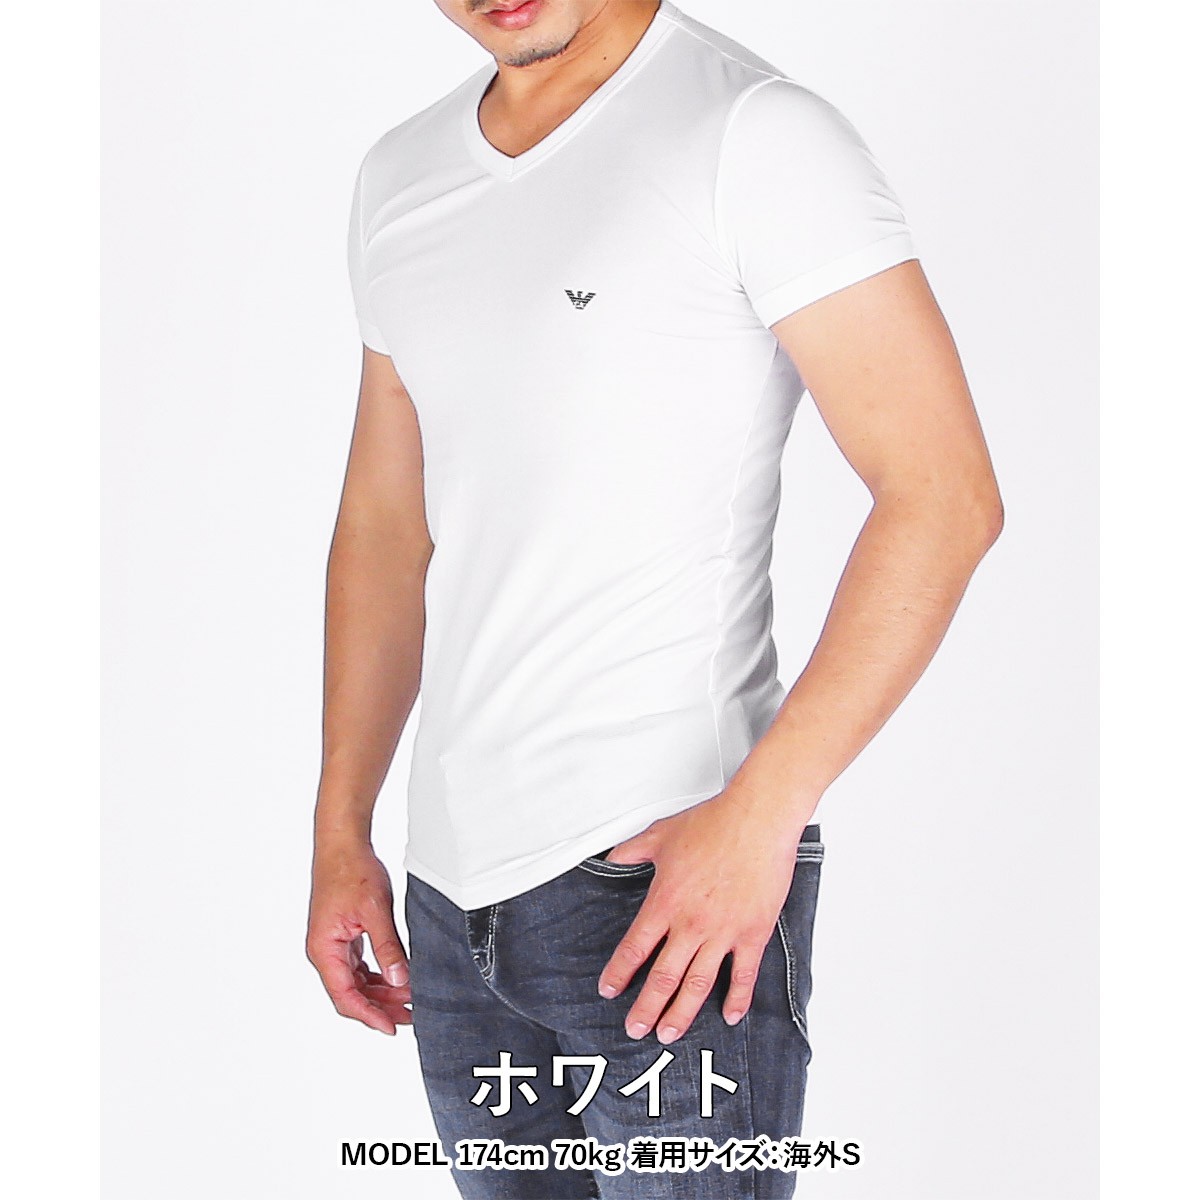 アルマーニ tシャツのランキングTOP100 - 人気売れ筋ランキング 